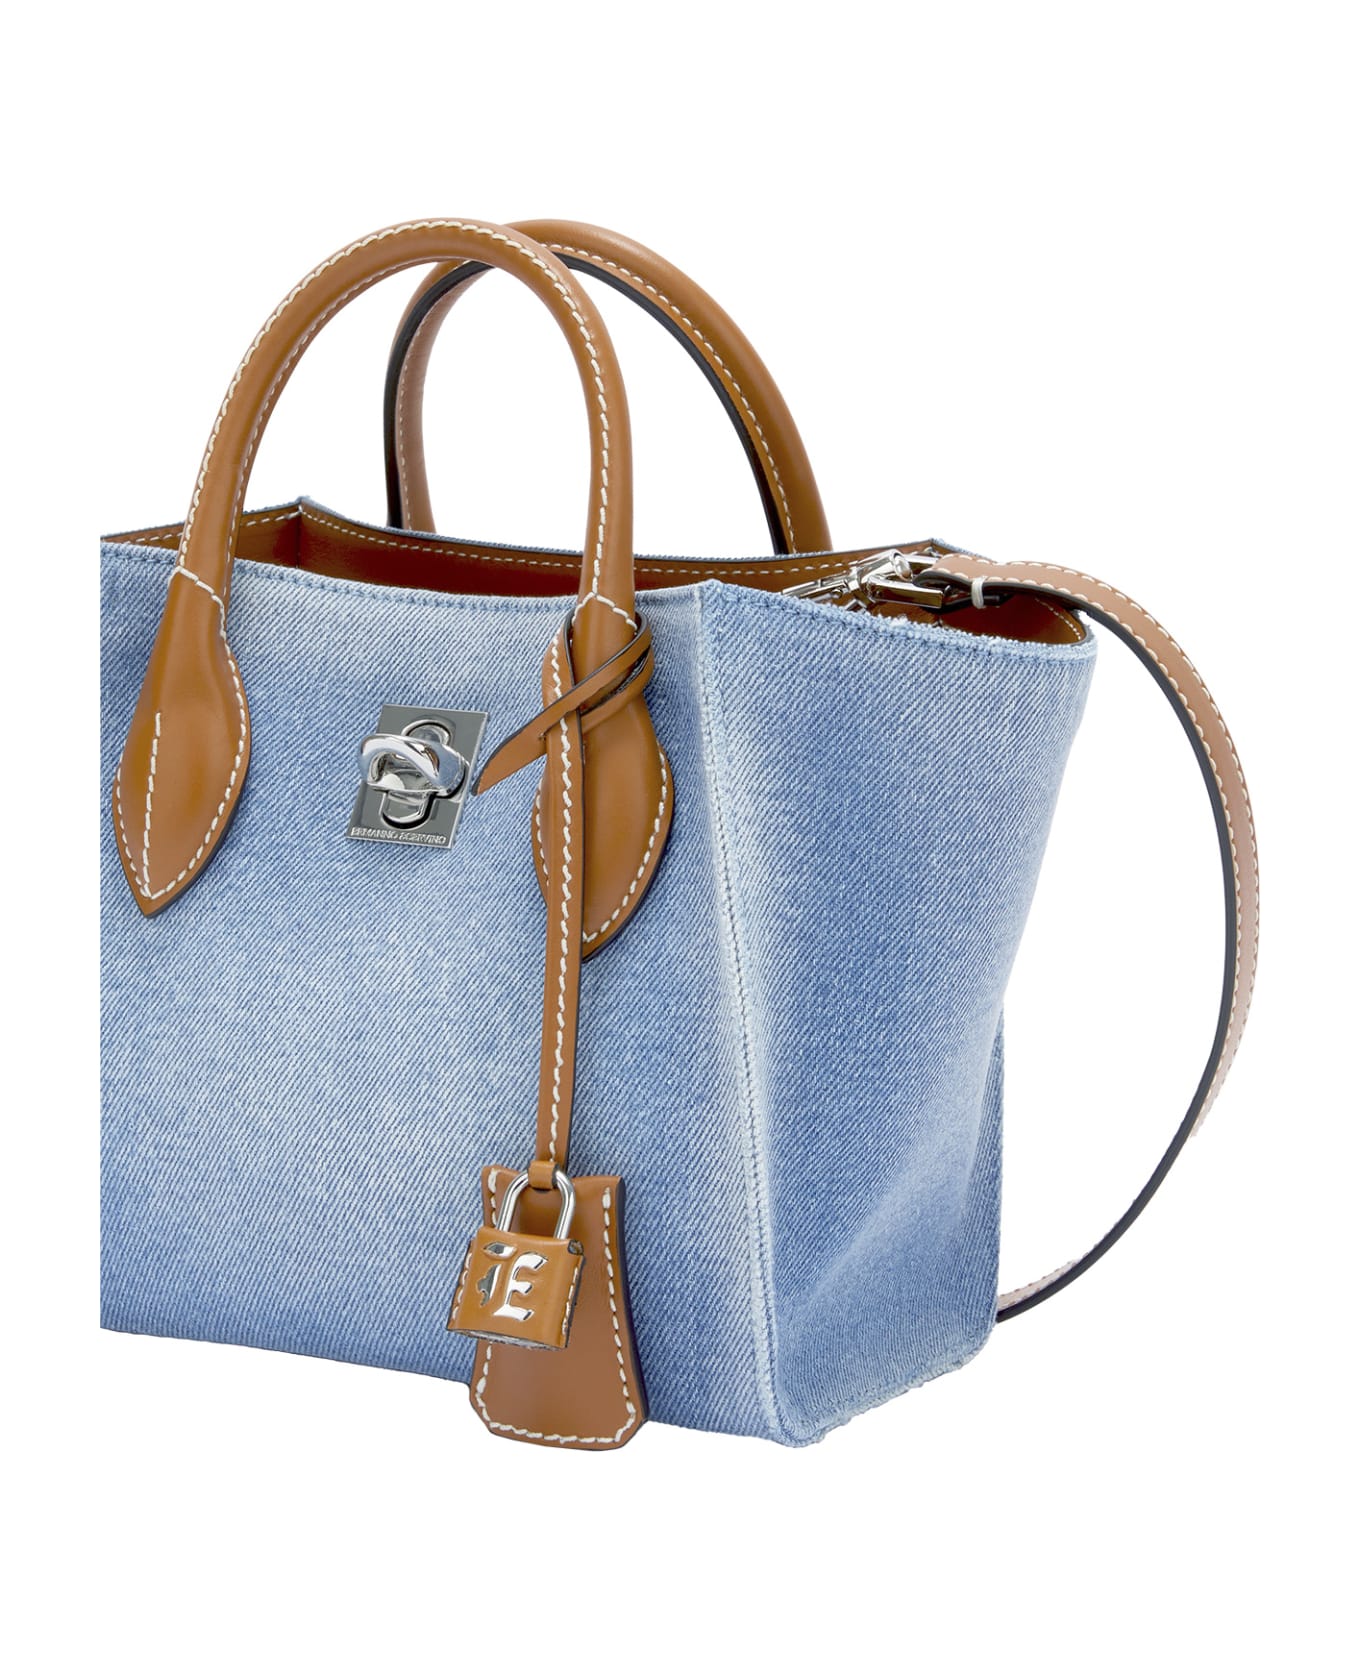 Ermanno Scervino Black Mini Maggie Bag With All-over Rhinestones - Blue